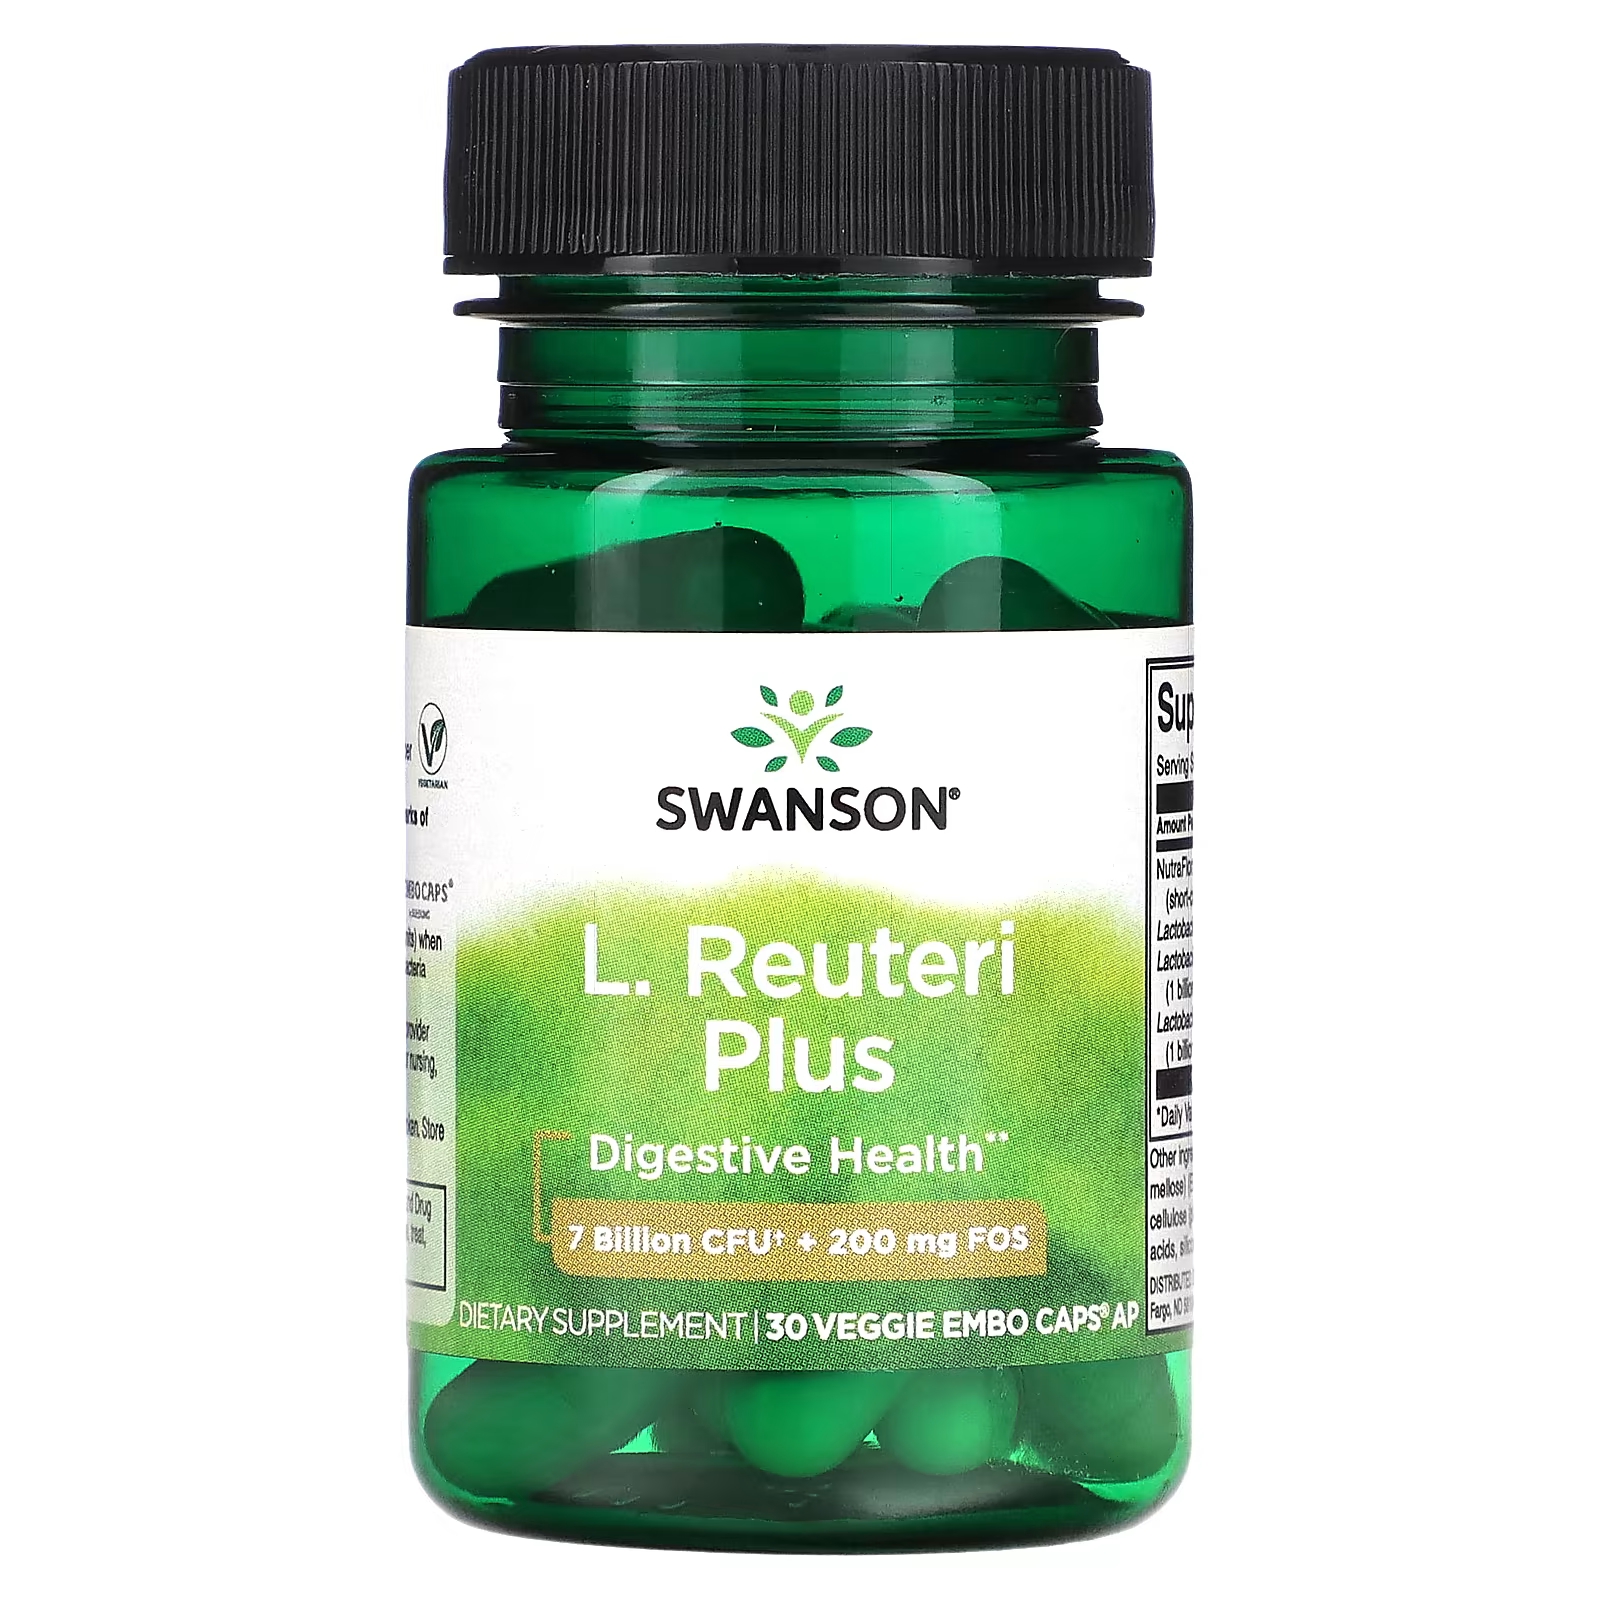 Пищевая добавка Swanson L. Reuteri Plus, 30 растительных капсул align probiotics поддержка пищеварения 24 7 добавка с пробиотиками с повышенной силой действия 21 капсула